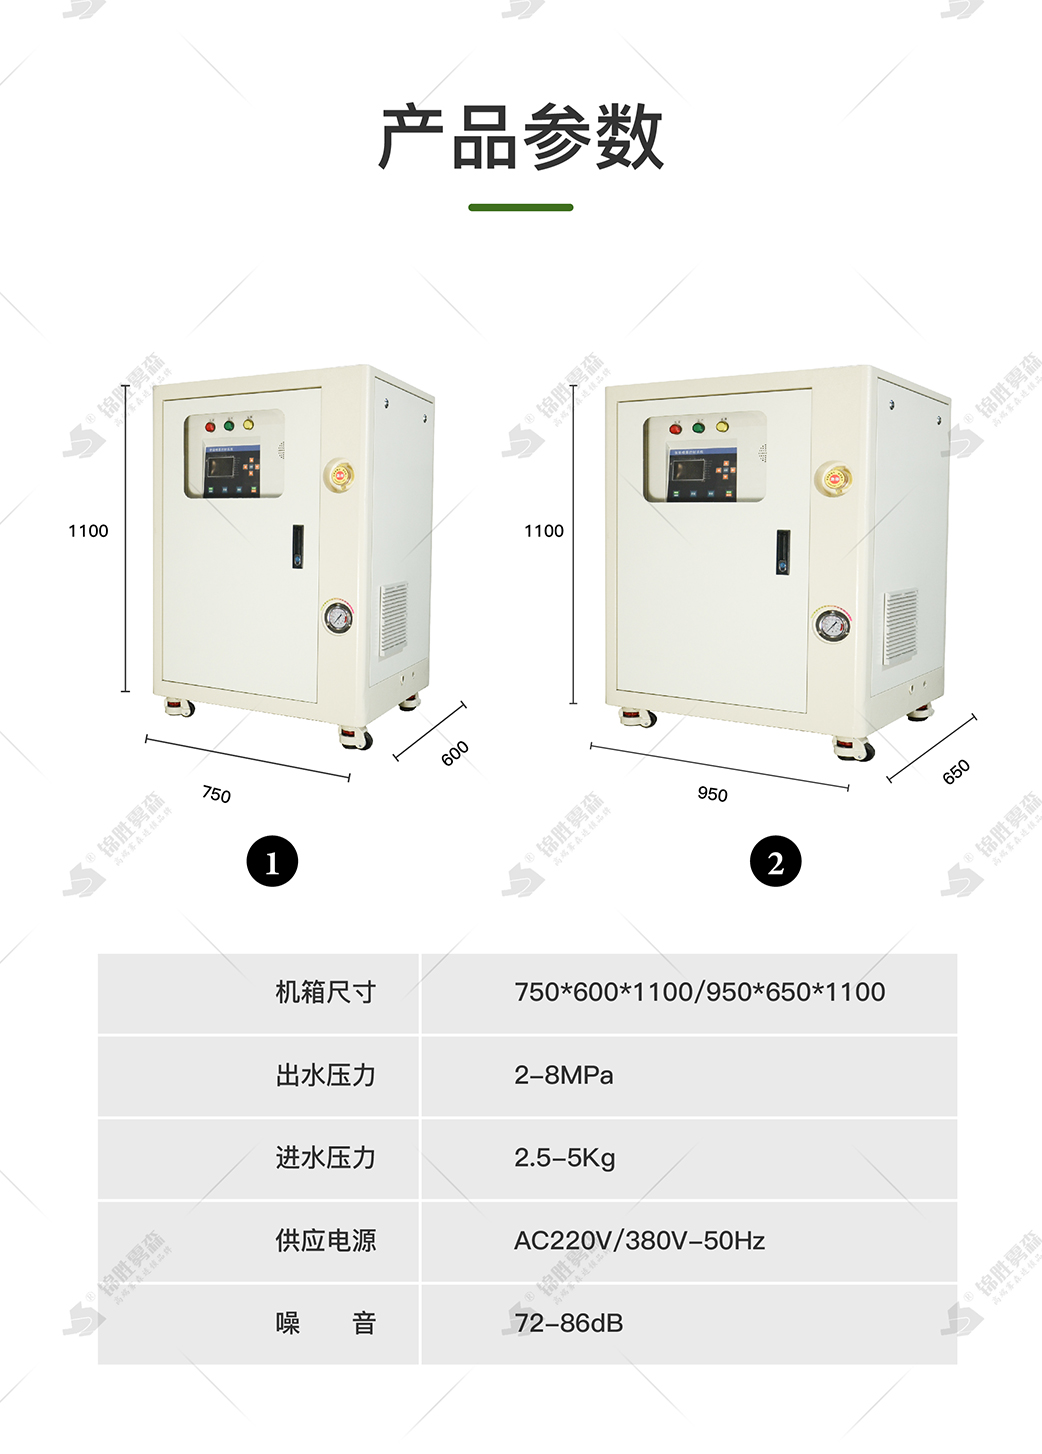 武汉锦胜雾森公司 提供高压喷雾降尘设备 原料车间降尘喷雾系统缩略图